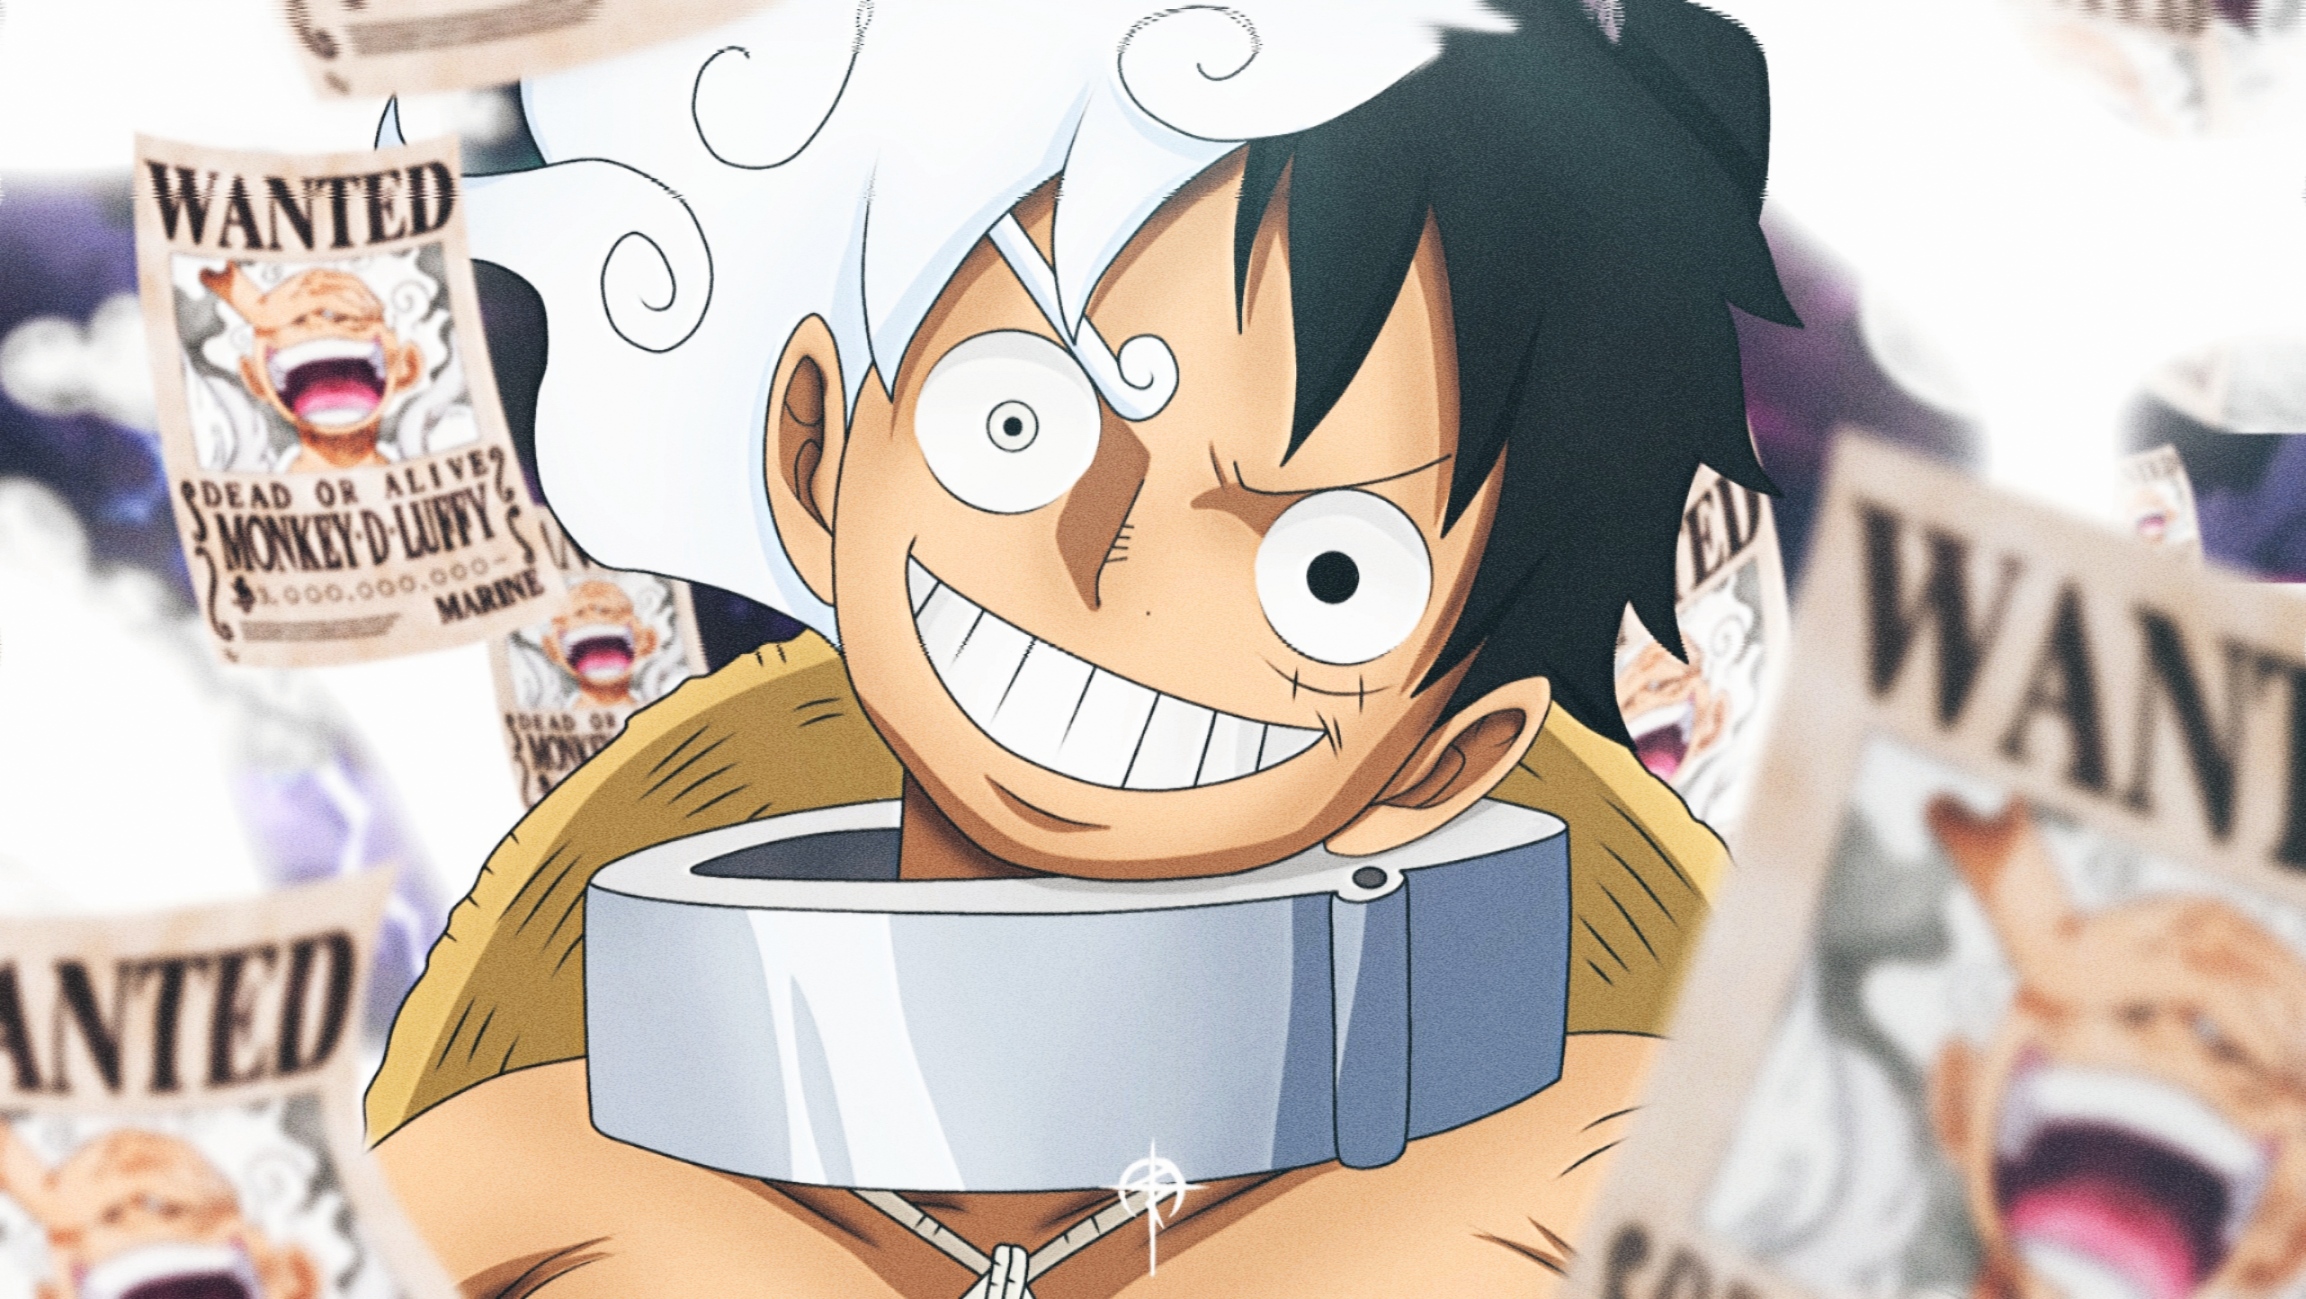 Luffy là nhân vật chính của bộ truyện One Piece, với nét đặc biệt và tình cảm mạnh mẽ, nên đã trở thành một trong những avatar được yêu thích nhất hiện nay. Nếu bạn cũng muốn sở hữu một hình ảnh avatar Luffy độc đáo và đẹp mắt, hãy xem ngay những mẫu hình ảnh này. Click để xem!